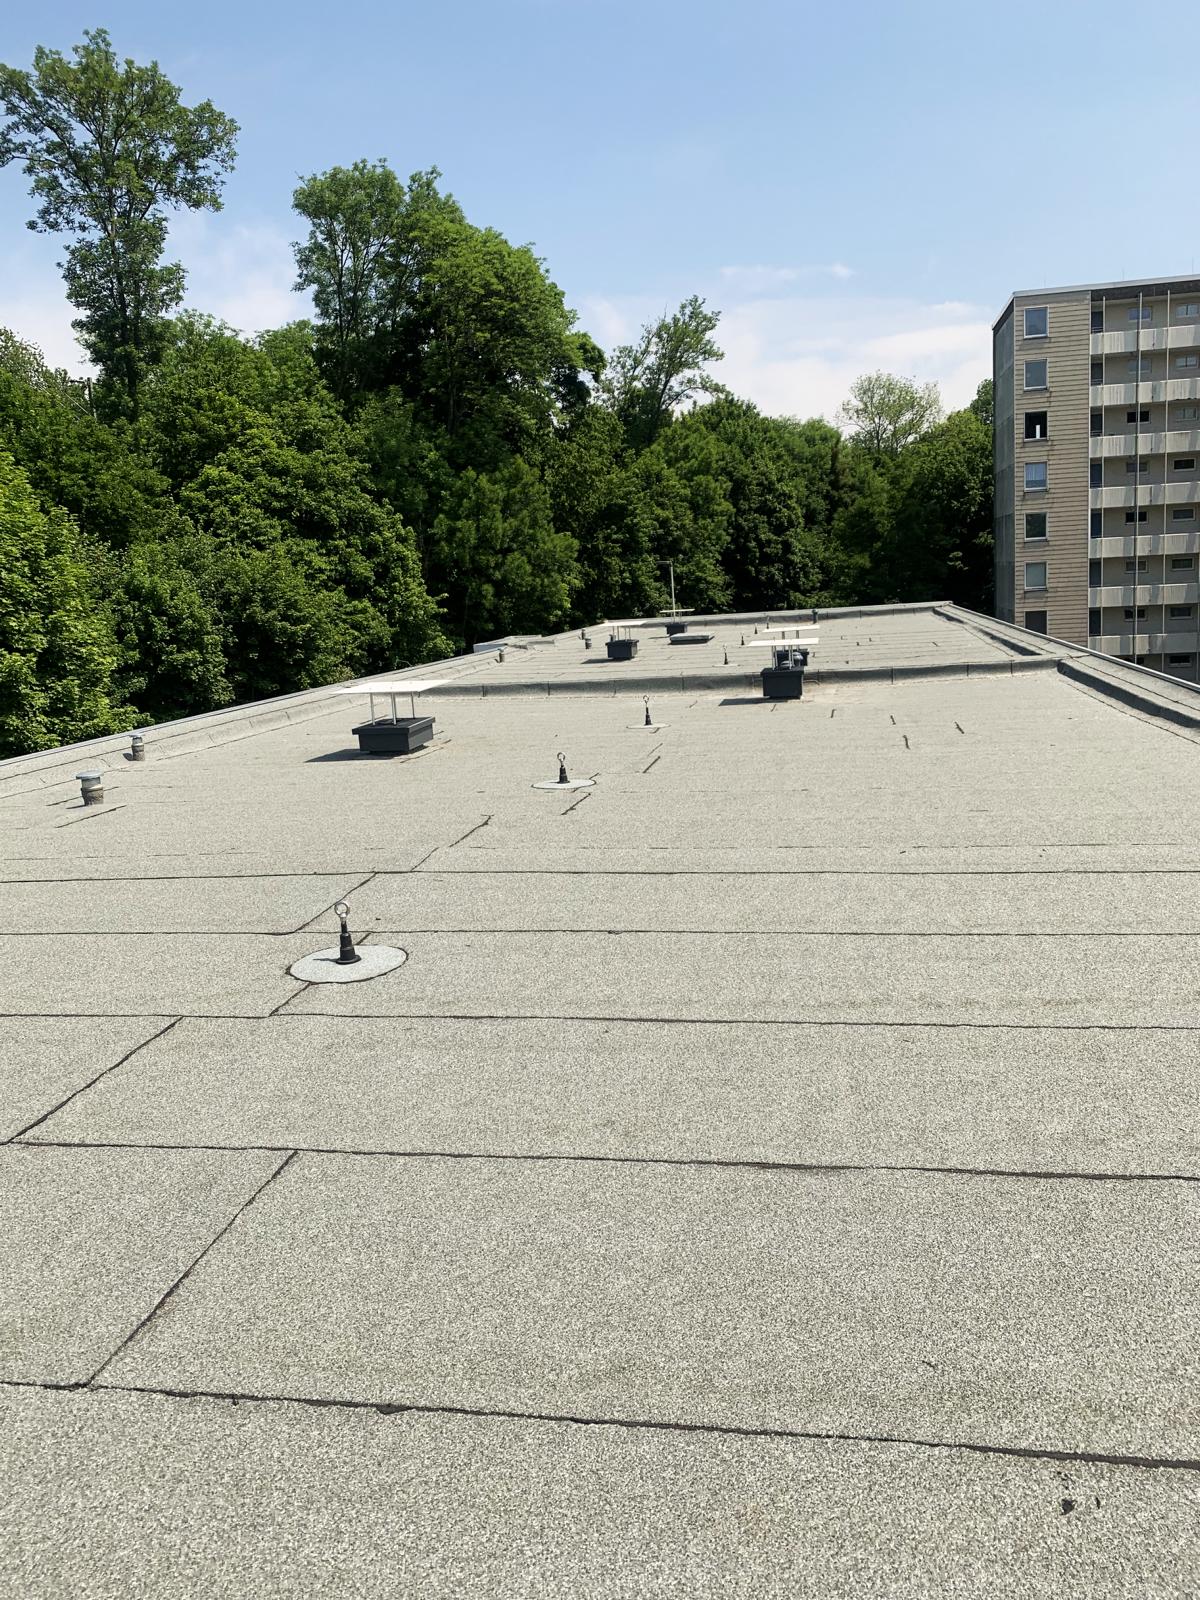 Das Bild zeigt eine sanierte Flachdachfläche. Die Bauwerksabdichtung bzw. Flachdachabdichtung wurde mithilfe von Bitumenbahnen gewährleistet.